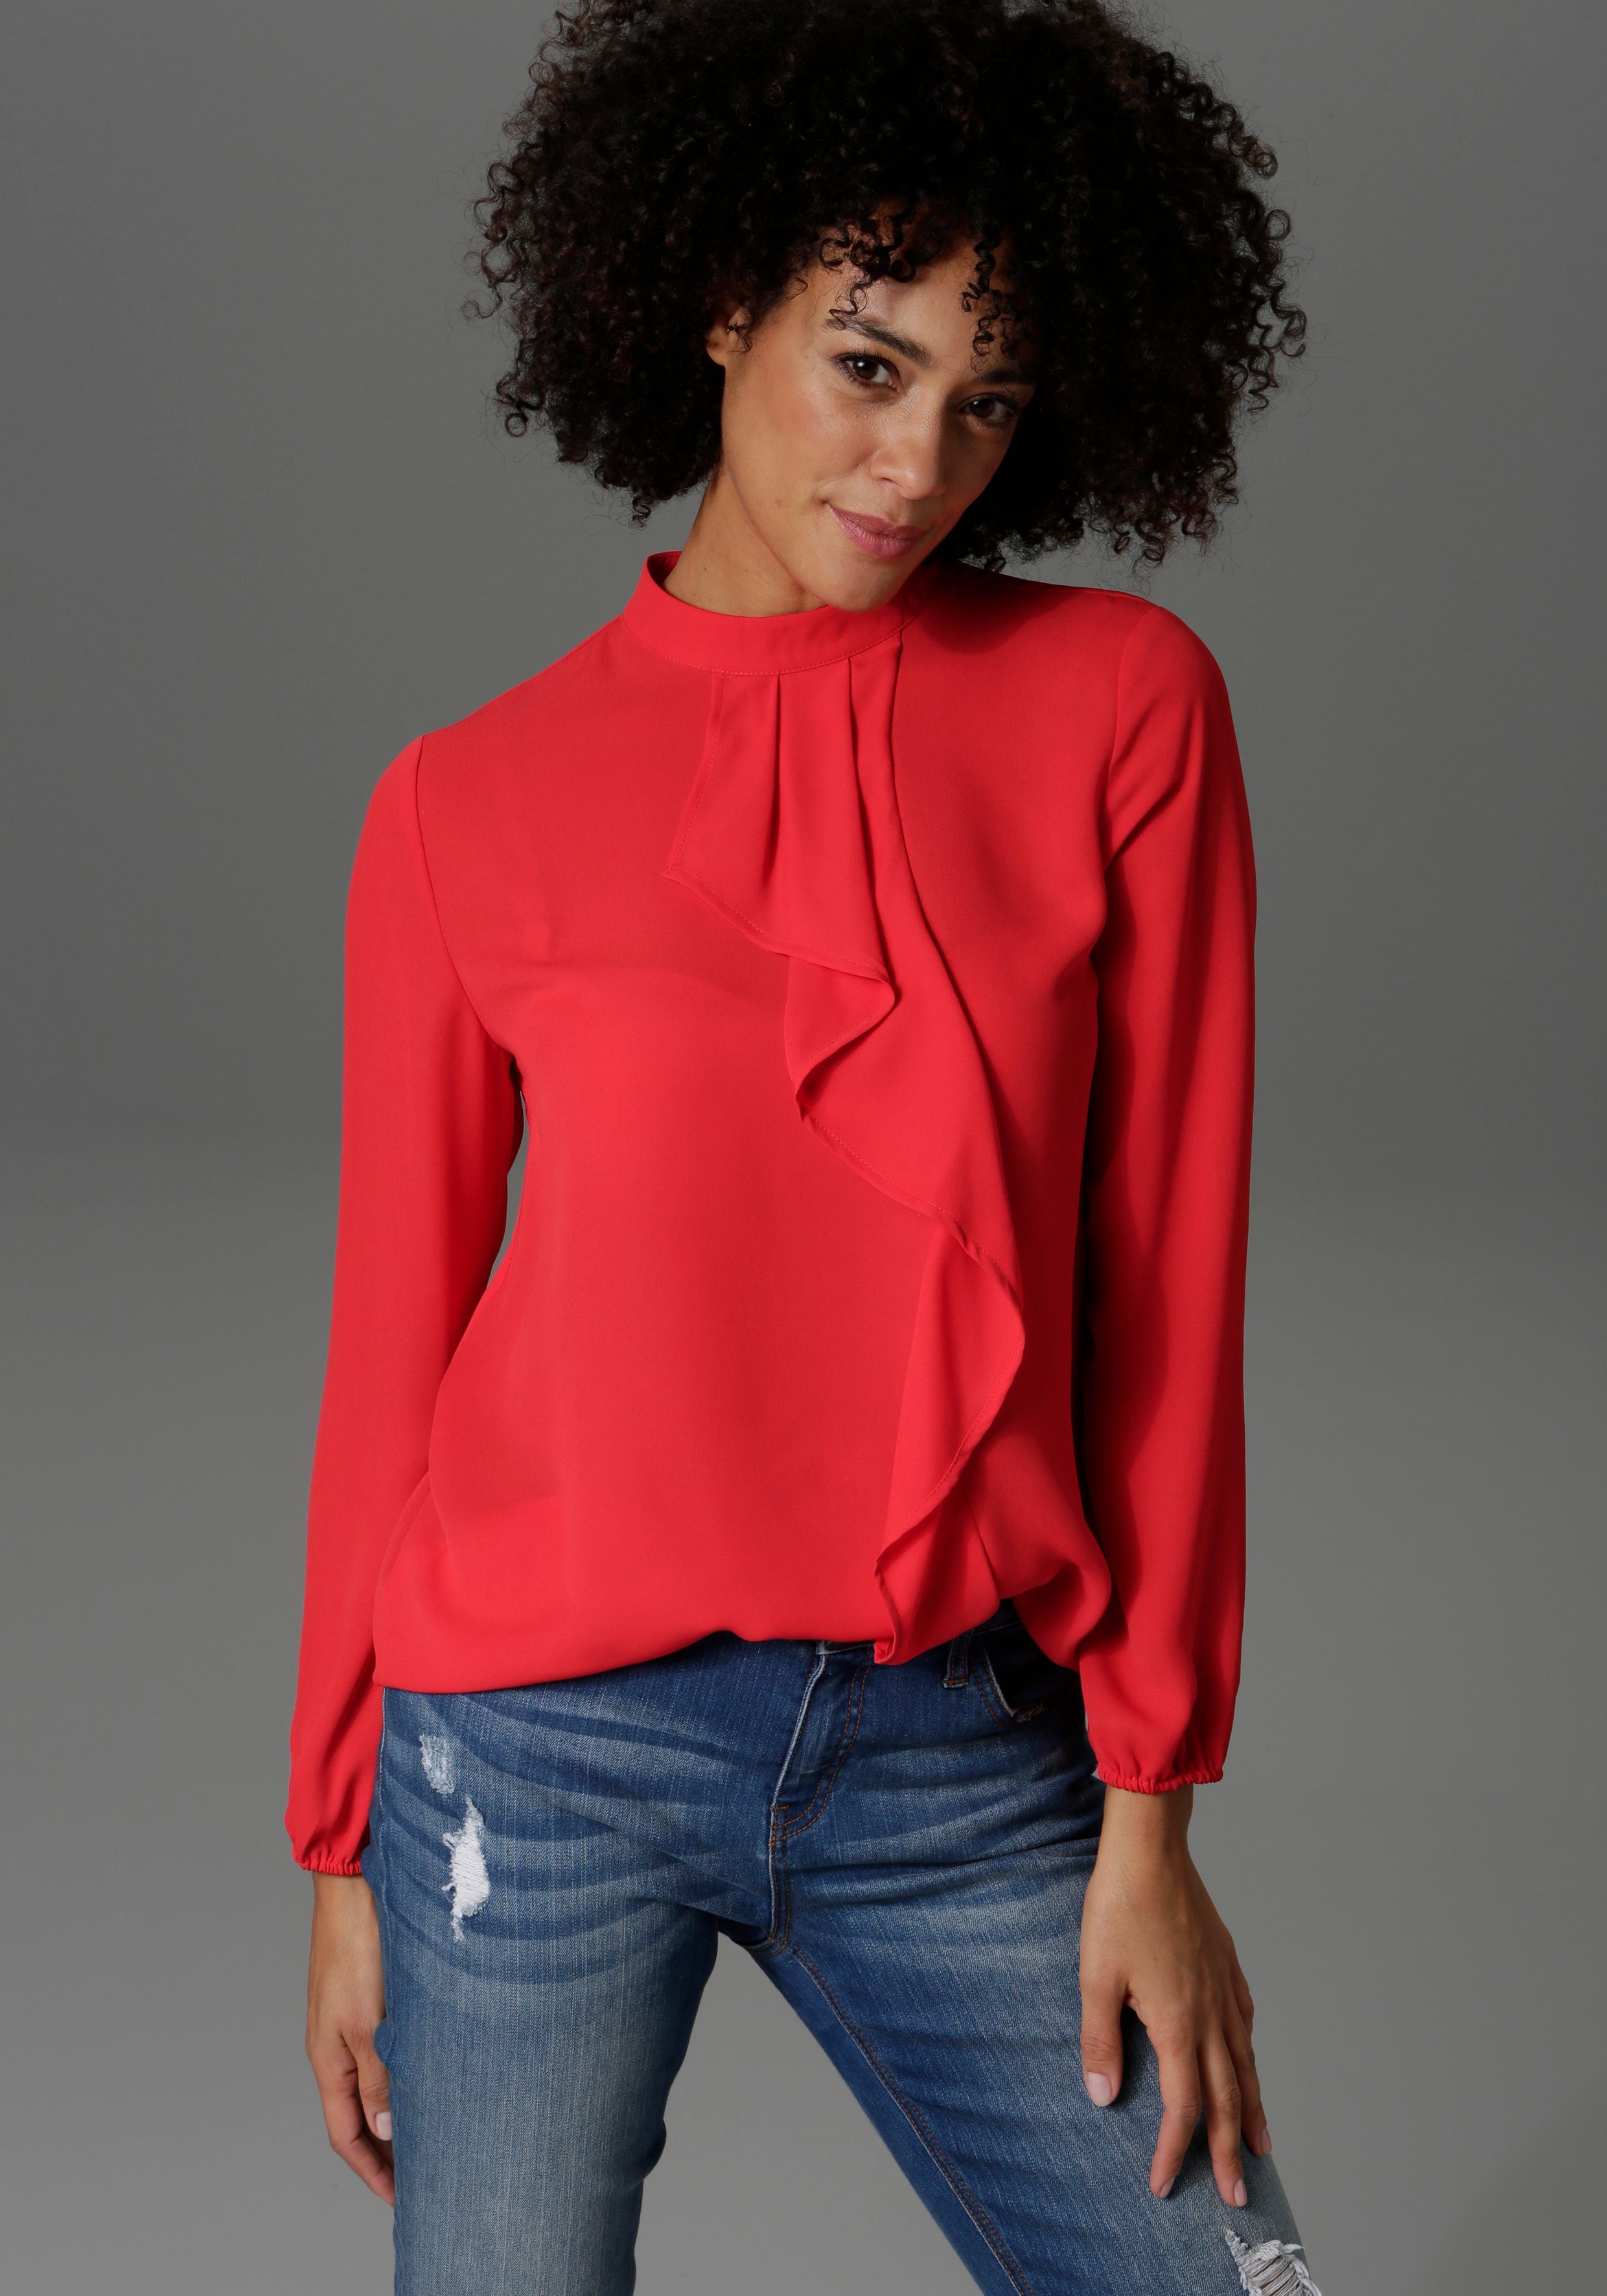 Rote Bluse online kaufen | OTTO